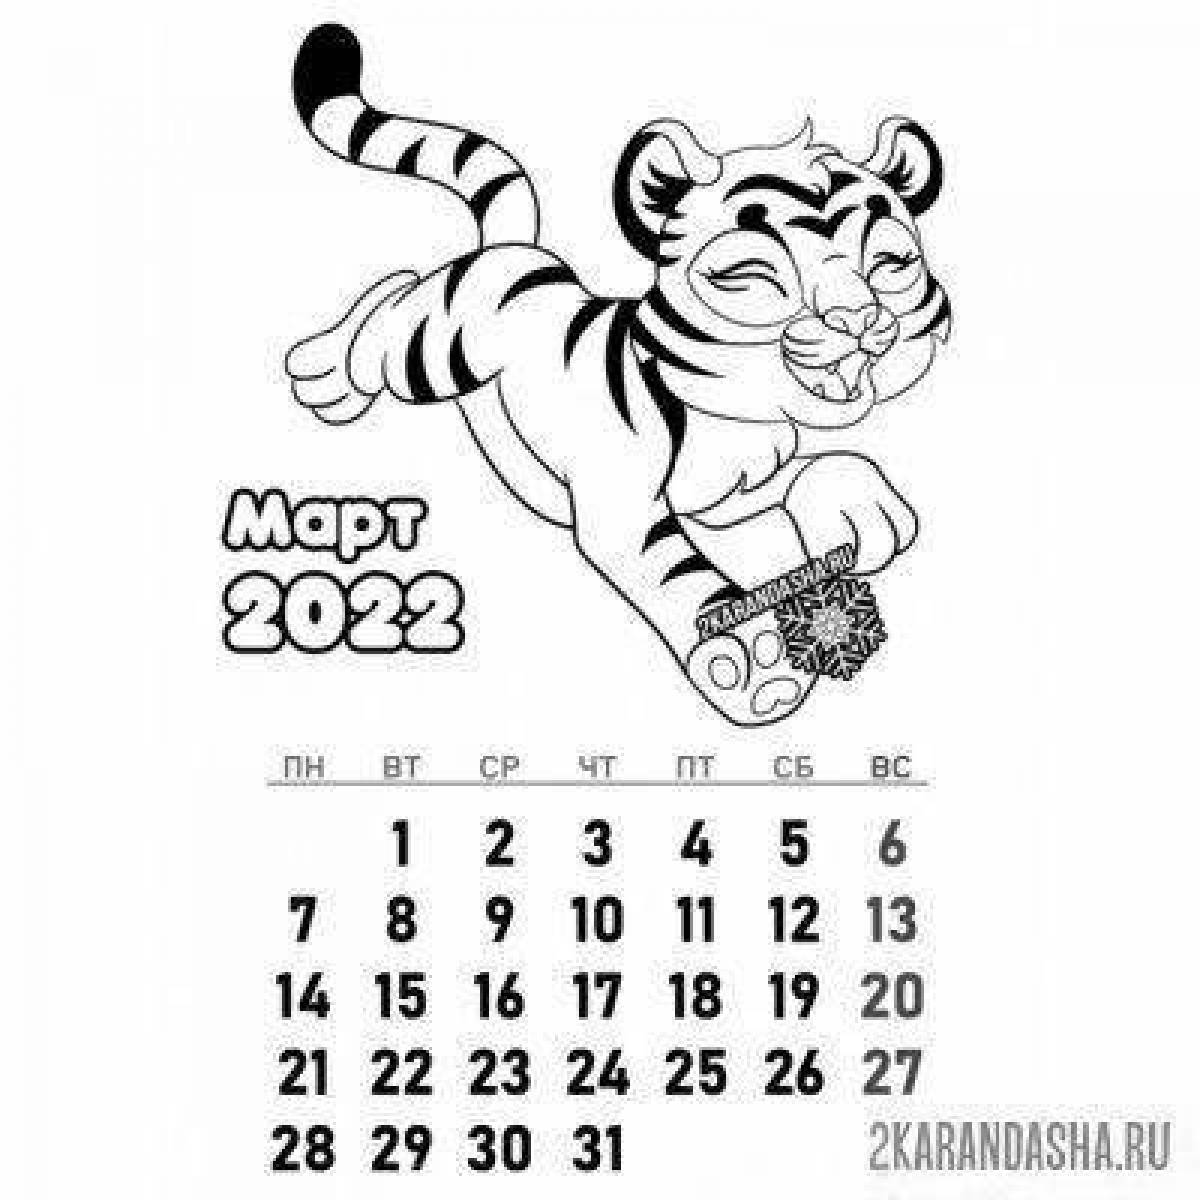 Luminous calendar for 2023 for children